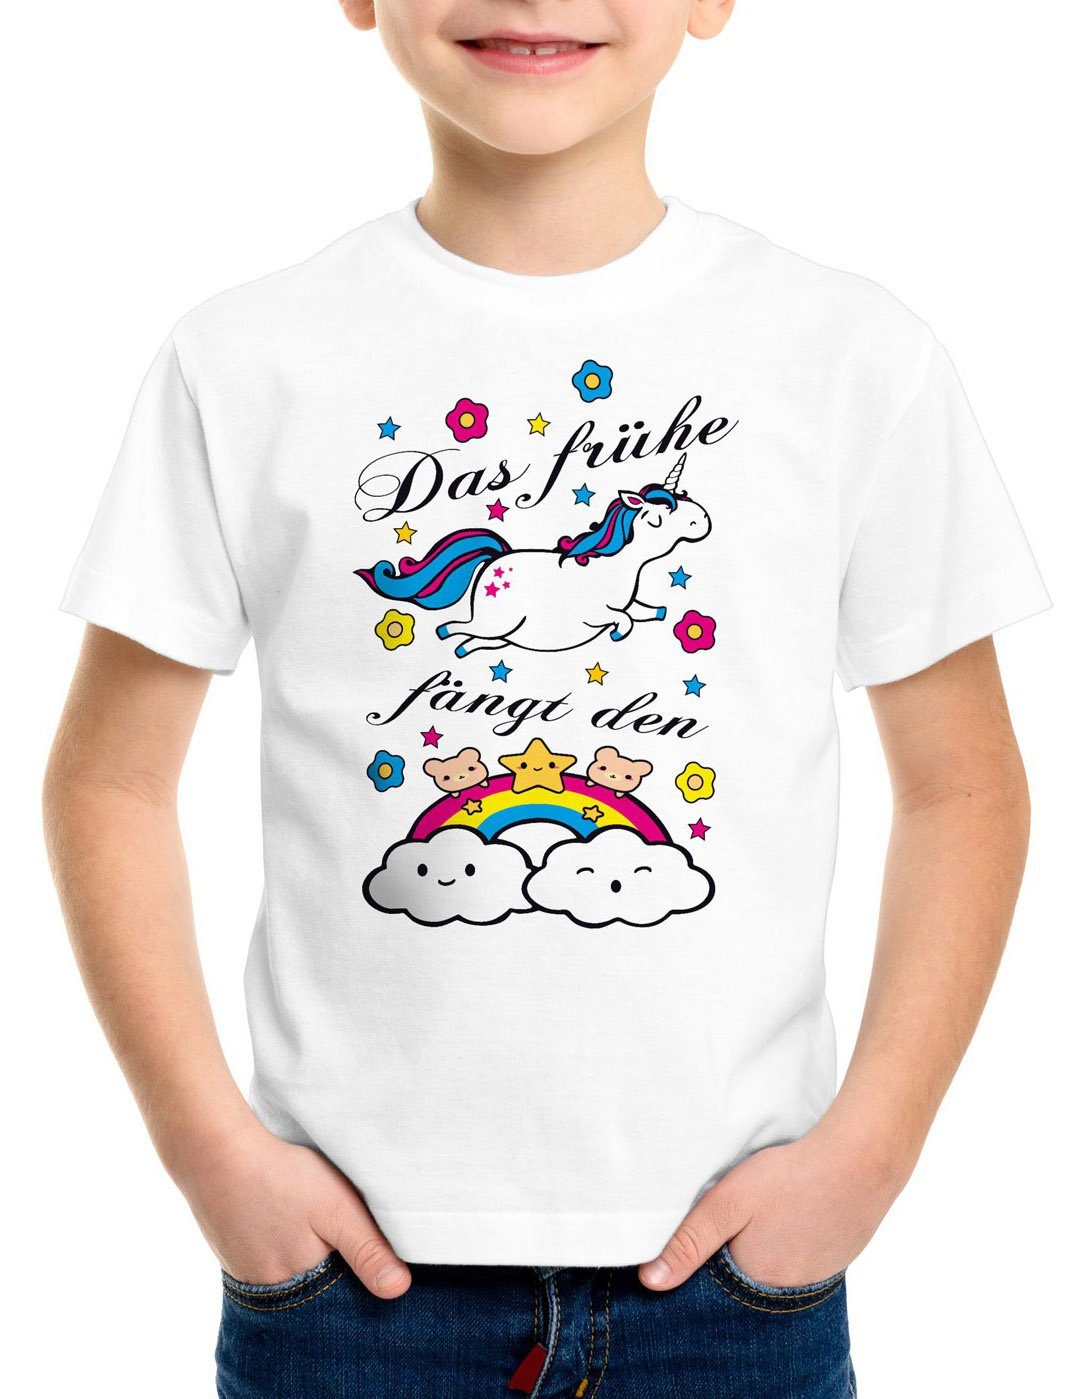 Einkaufsliste style3 Print-Shirt Kinder frühe Das T-Shirt Unicorn fängt bärchen Regenbogen spruch süß Einhorn fun weiß